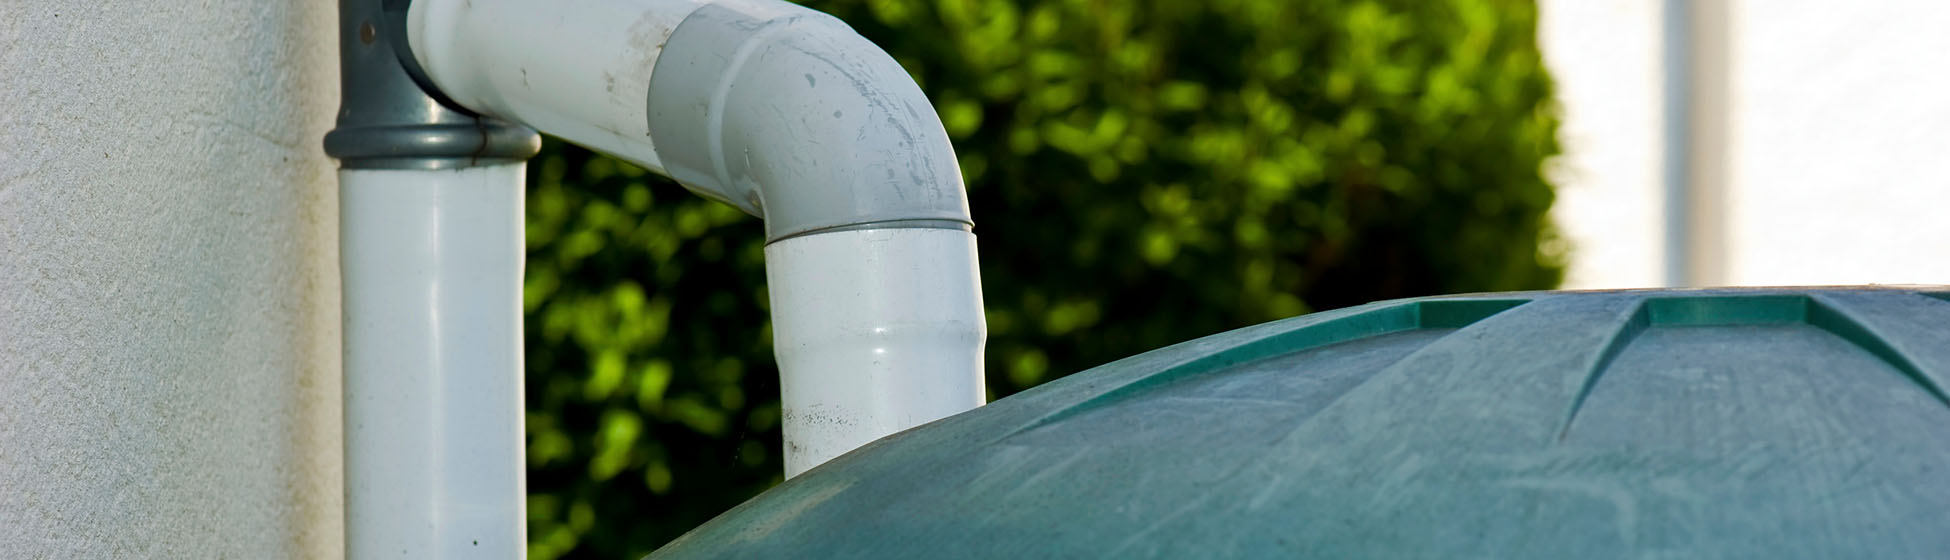 Installer pompe recuperation eau de pluie